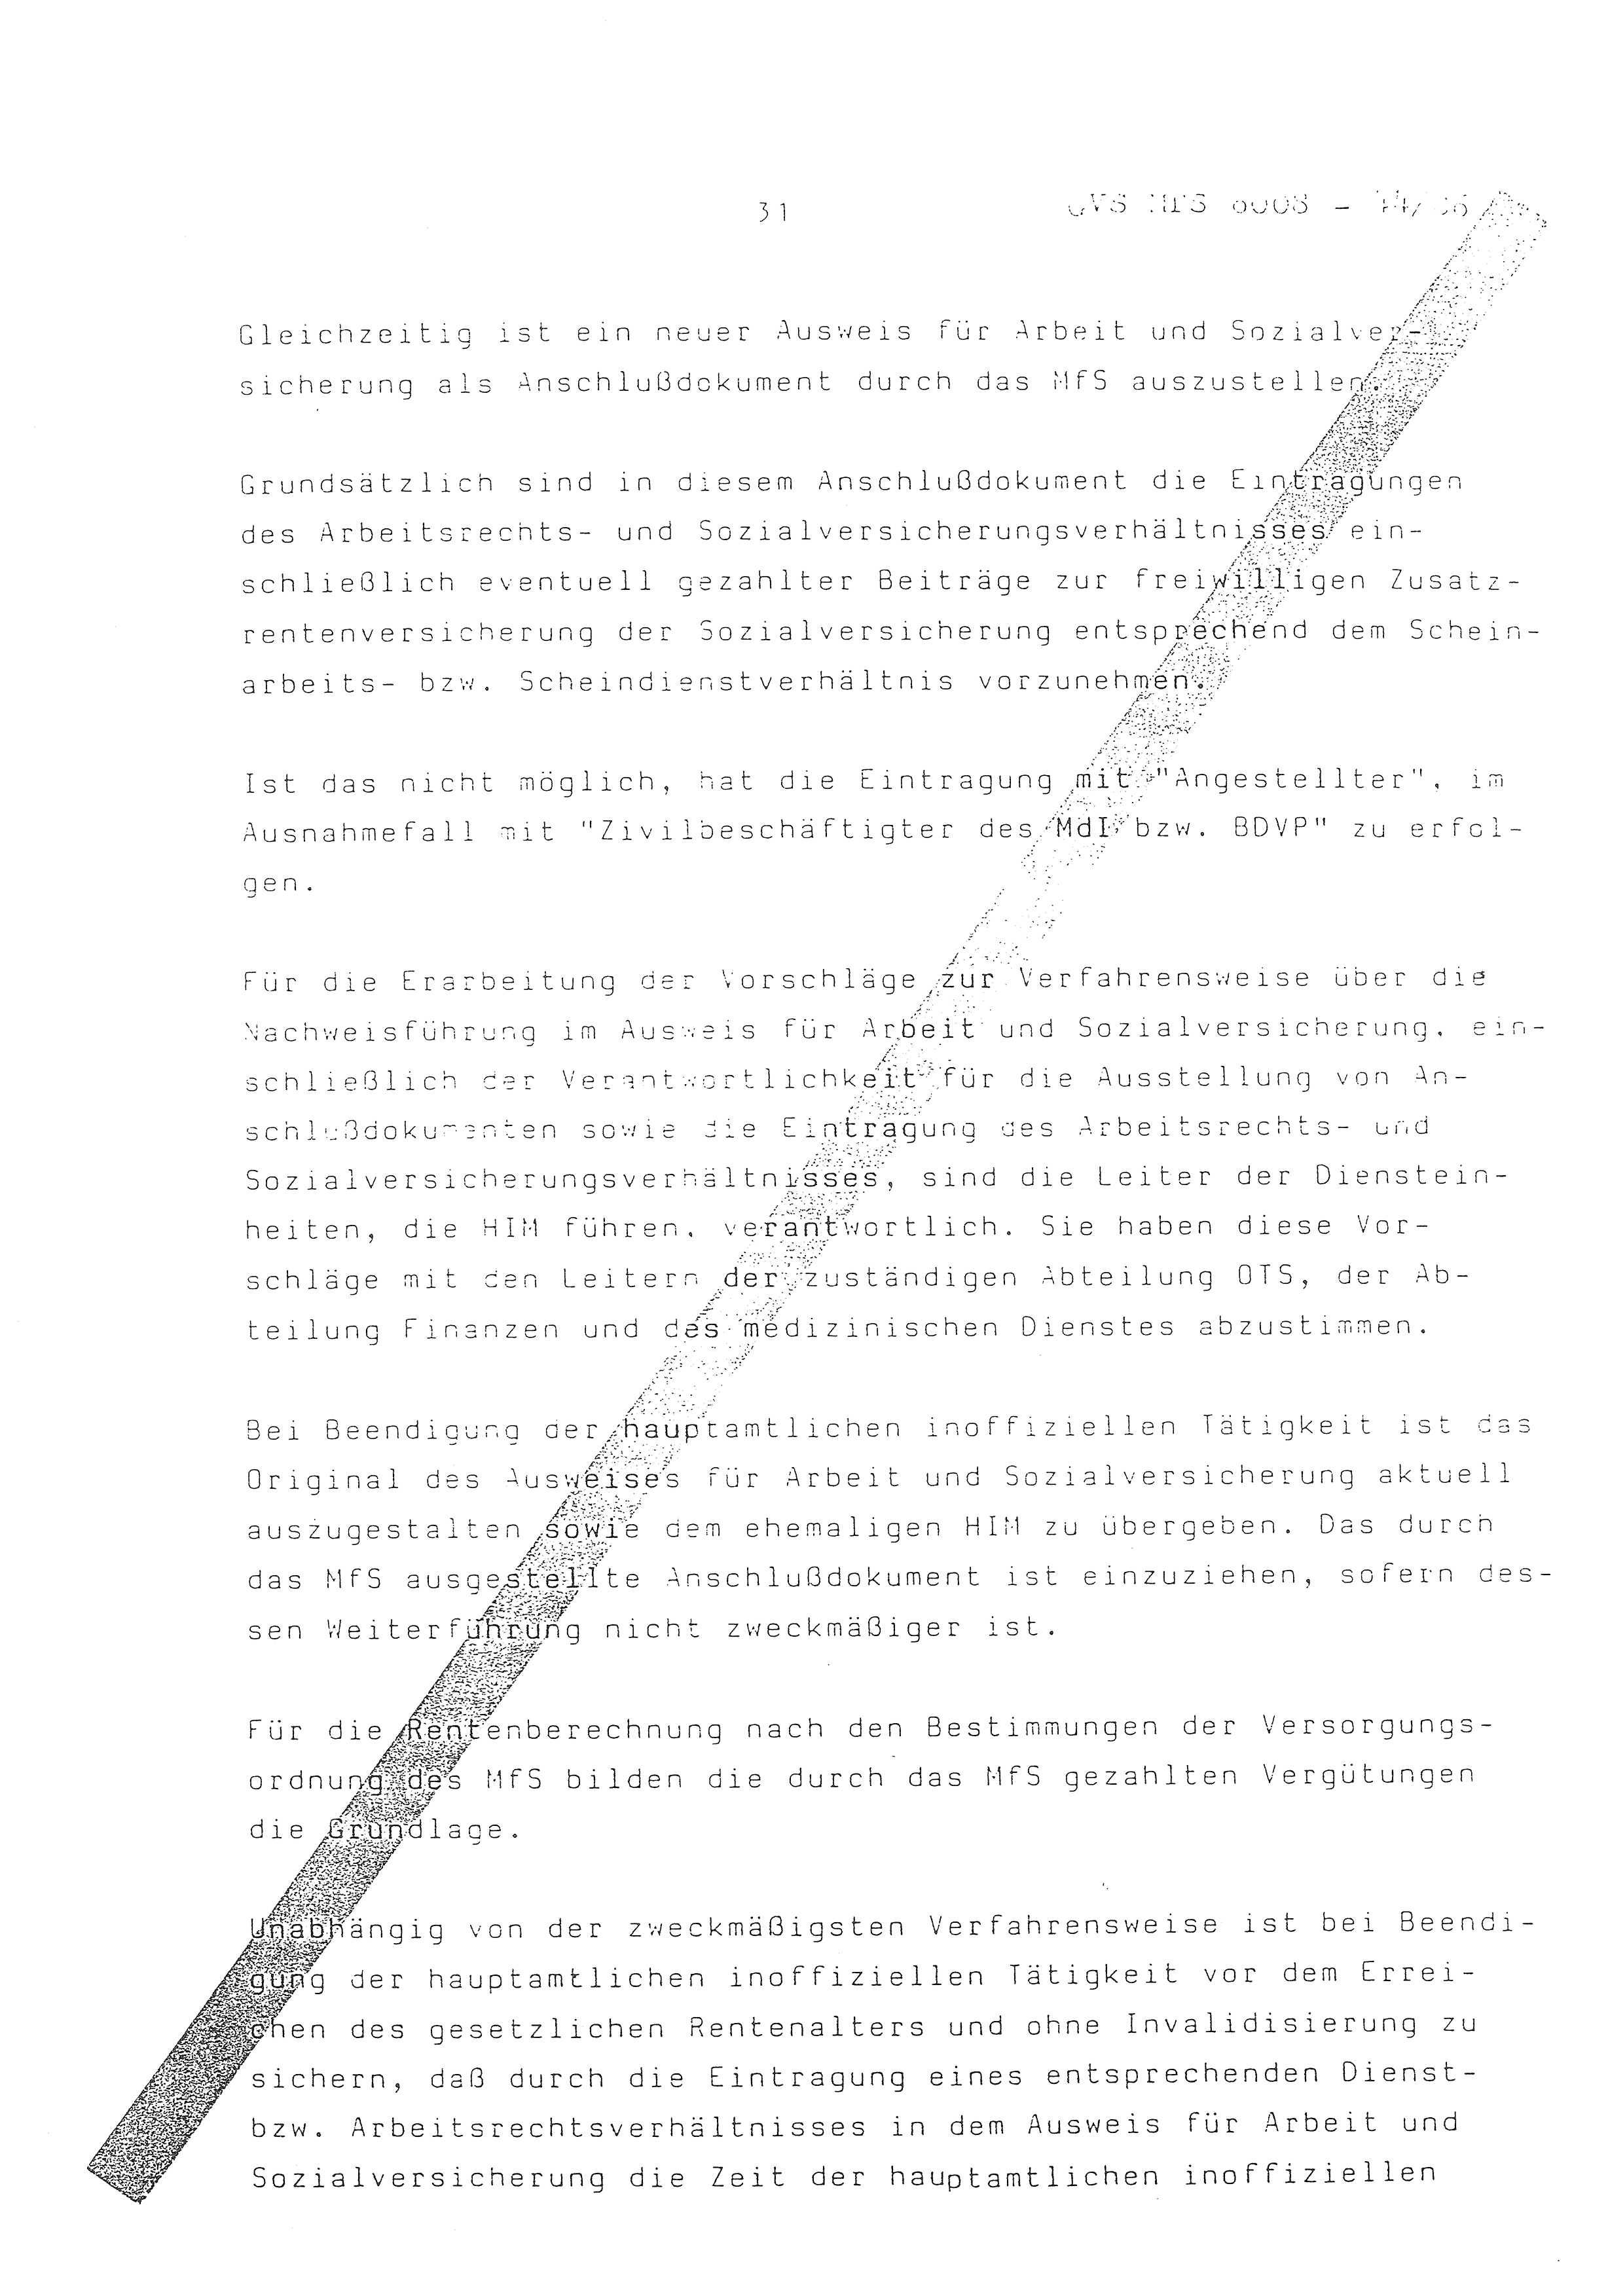 2. Durchführungsbestimmung zur Richtlinie 1/79 über die Arbeit mit hauptamtlichen Mitarbeitern des MfS (HIM), Deutsche Demokratische Republik (DDR), Ministerium für Staatssicherheit (MfS), Der Minister (Mielke), Geheime Verschlußsache (GVS) ooo8-44/86, Berlin 1986, Seite 31 (2. DB RL 1/79 DDR MfS Min. GVS ooo8-44/86 1986, S. 31)